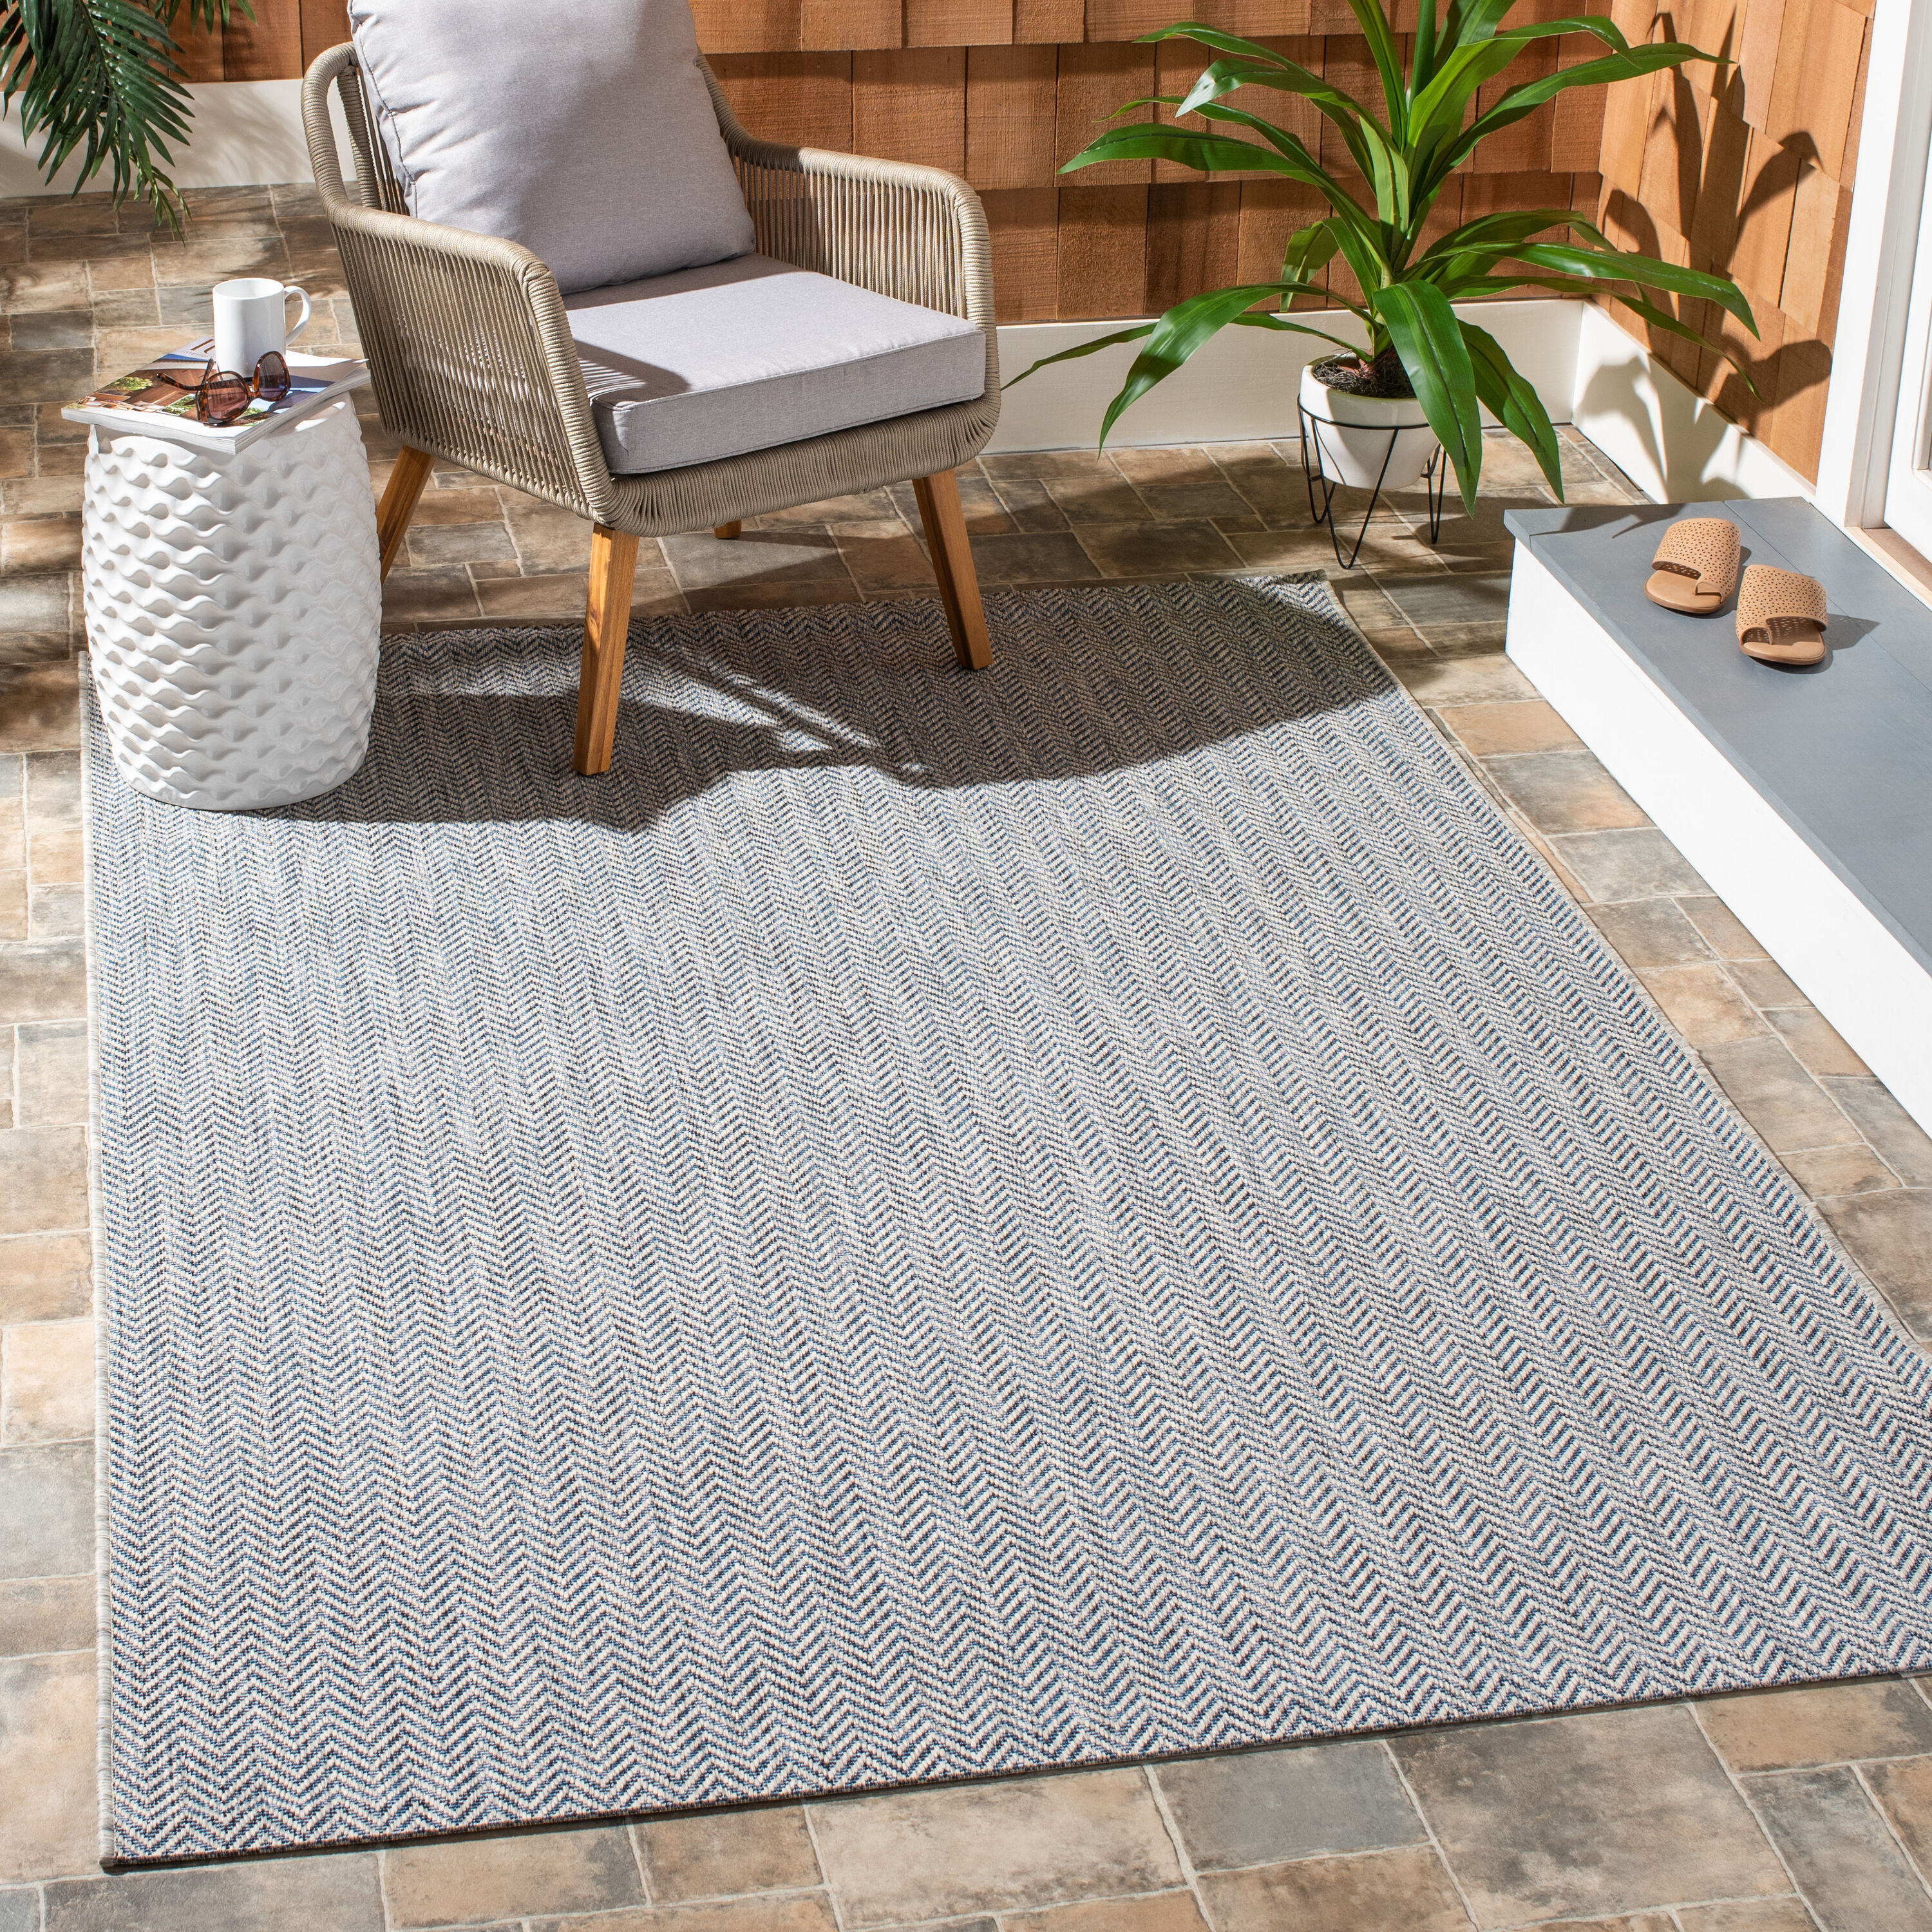 Contemporary Indoor / Outdoor Sisal Area Rug for Garage, Garden Kitchen, Navy